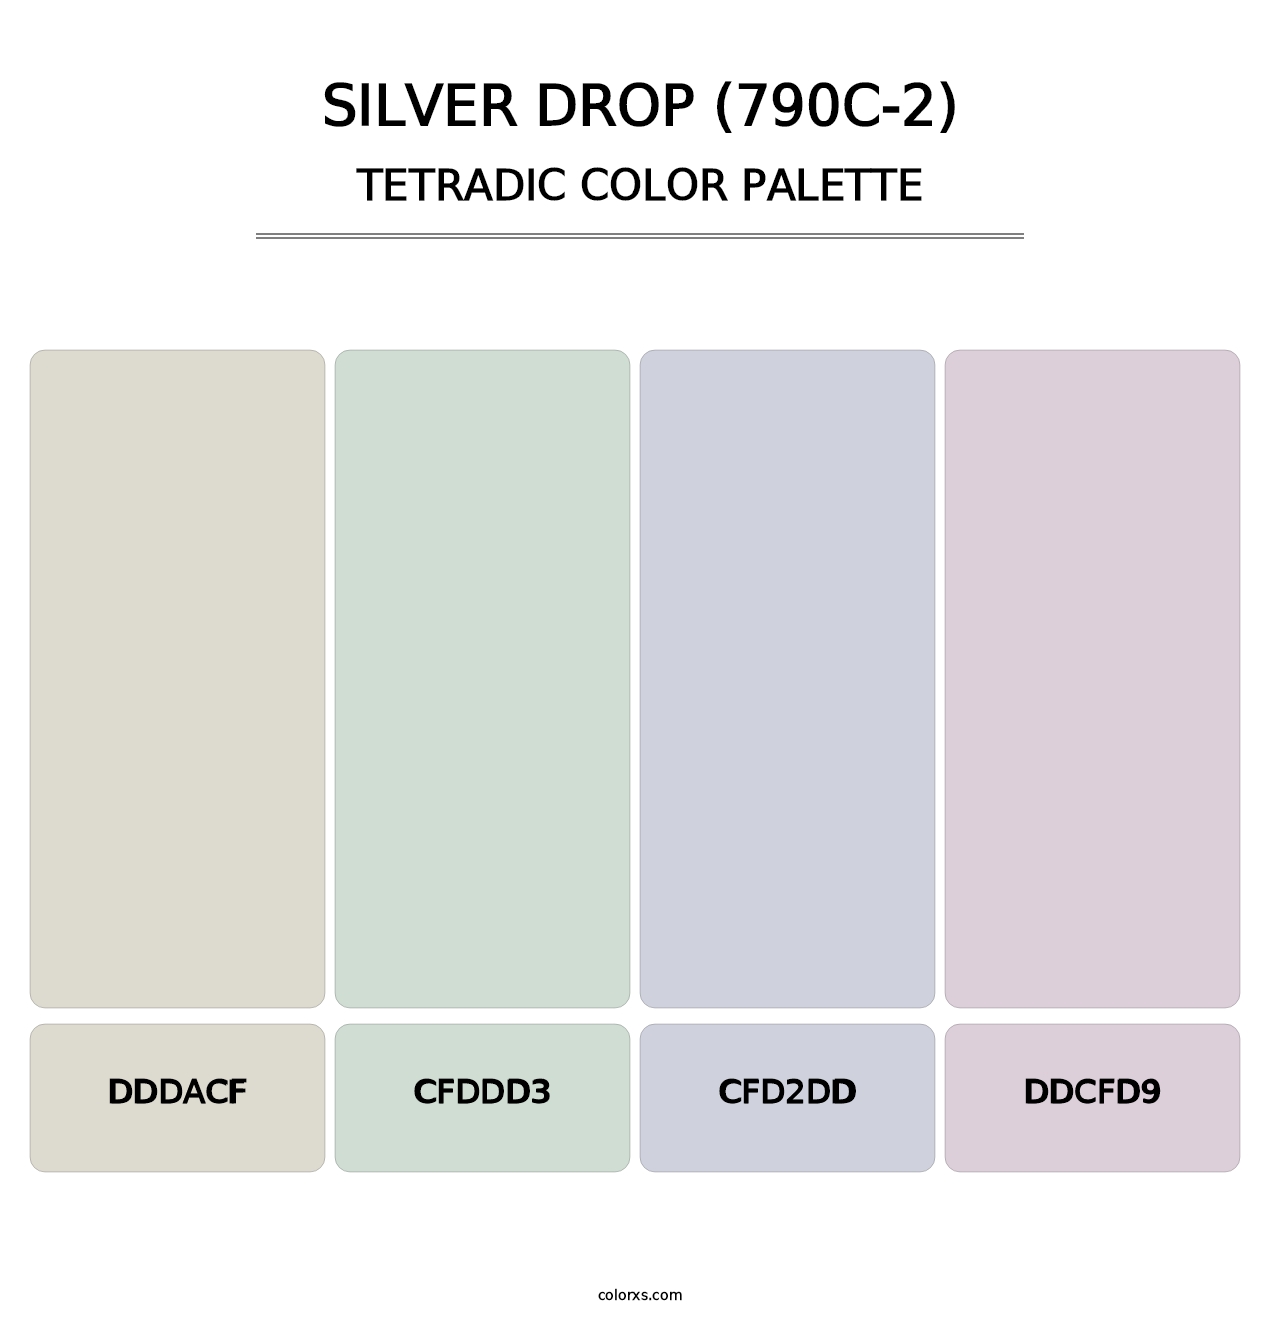 Silver Drop (790C-2) - Tetradic Color Palette